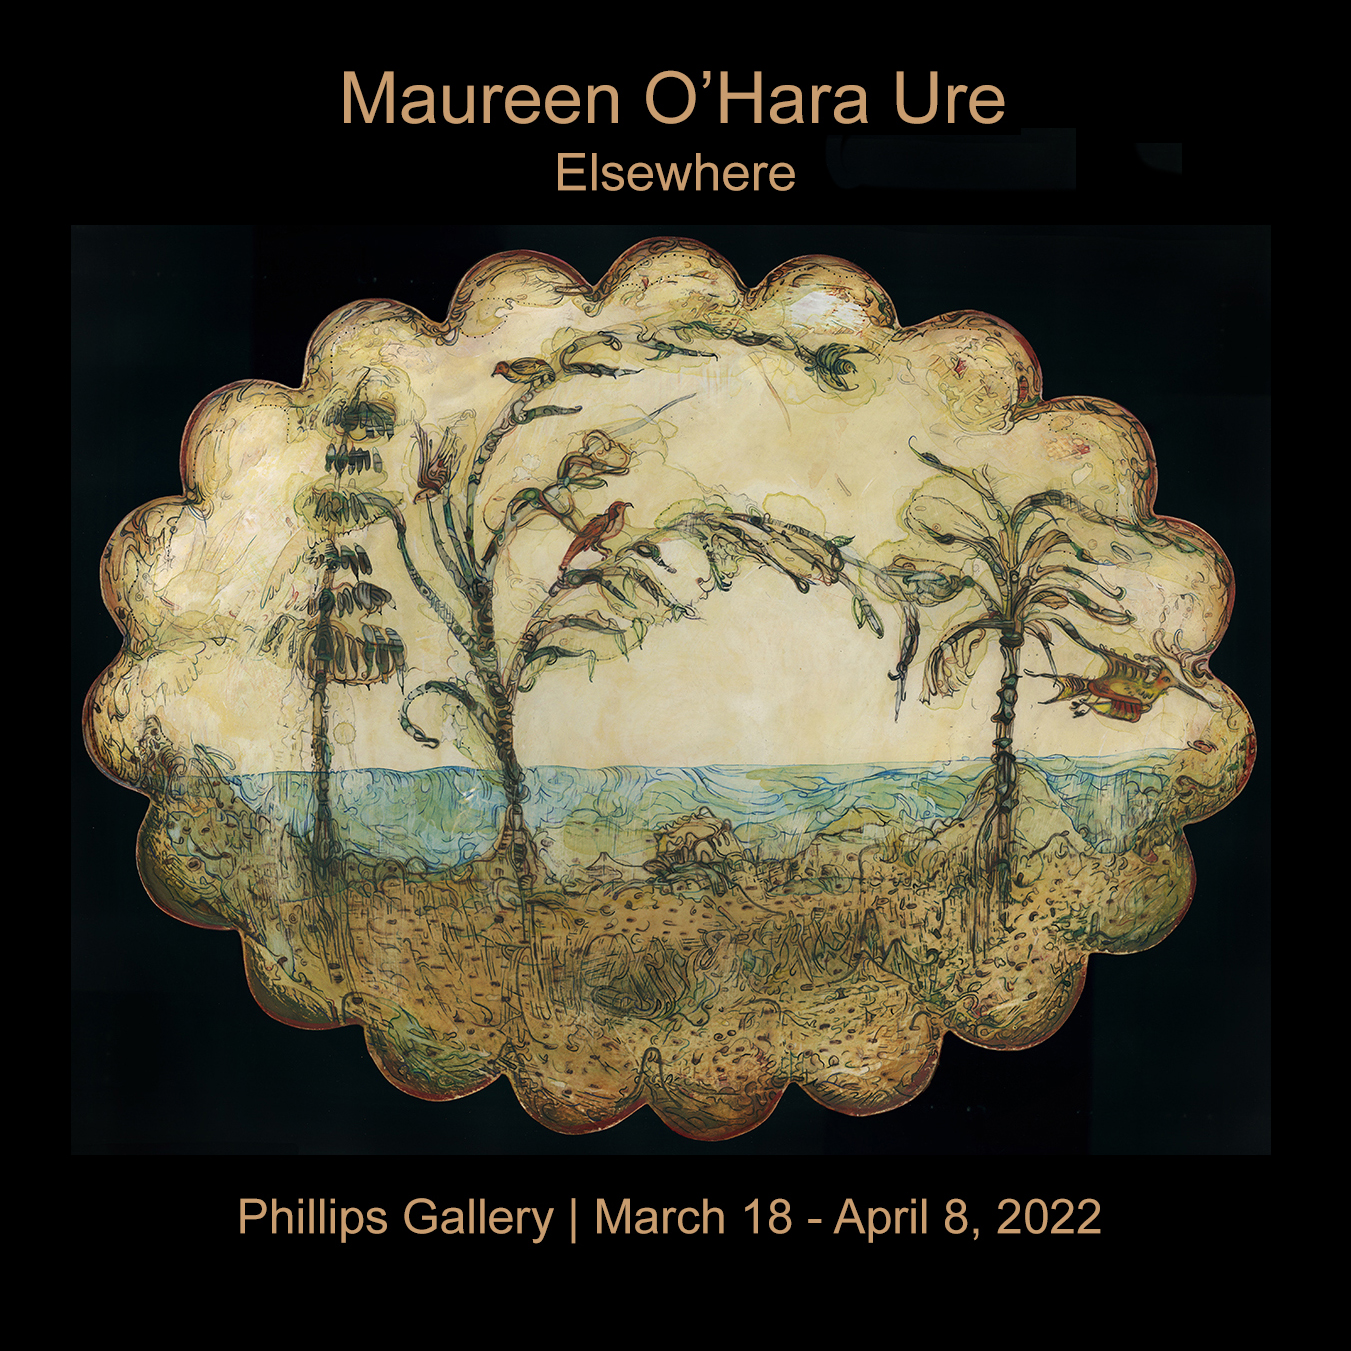 Maureen O'Hara Ure at Phillips Gallery